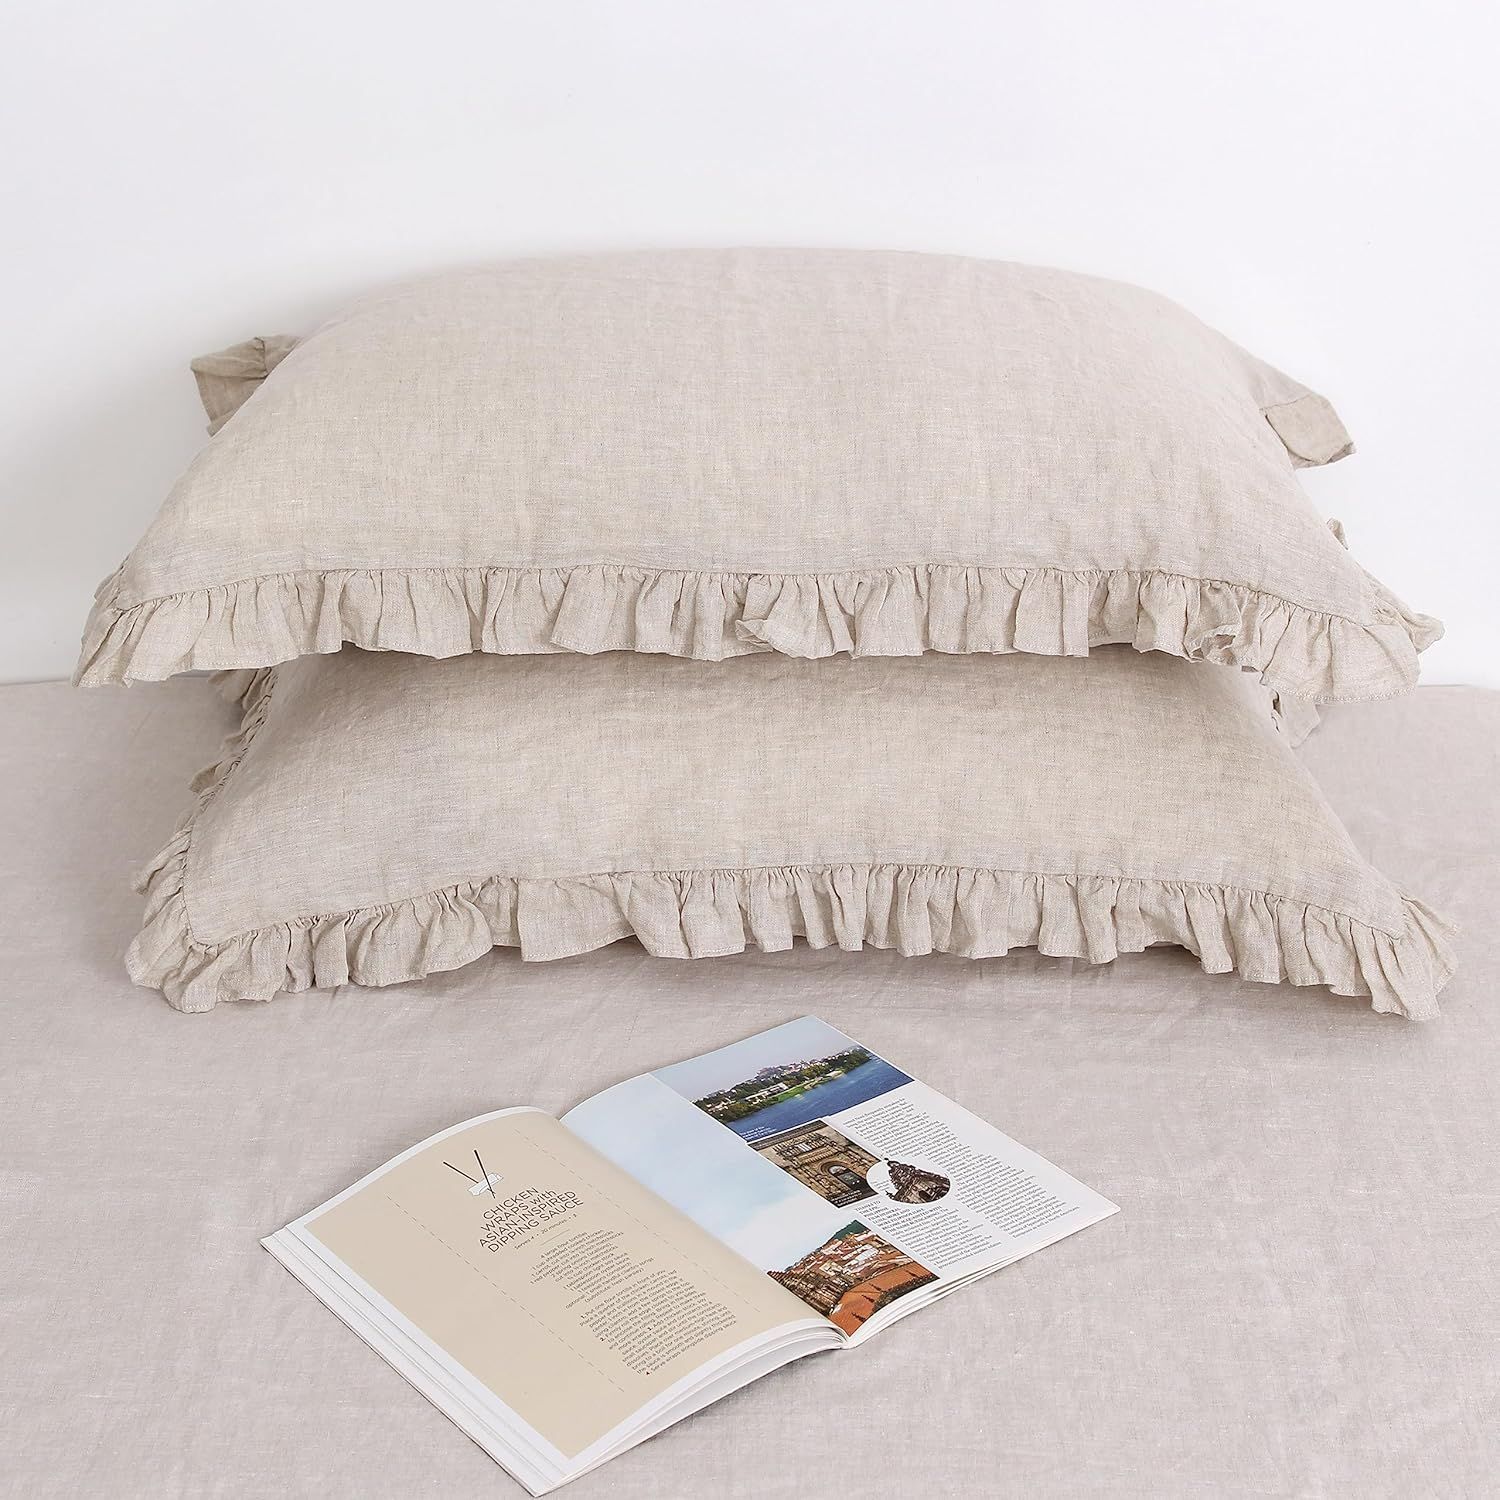 L Linen World Linen Ruffled Pillow Cases,100% French Natural Linen Pillowcase Set of 2,Ruffled Li... | Amazon (US)